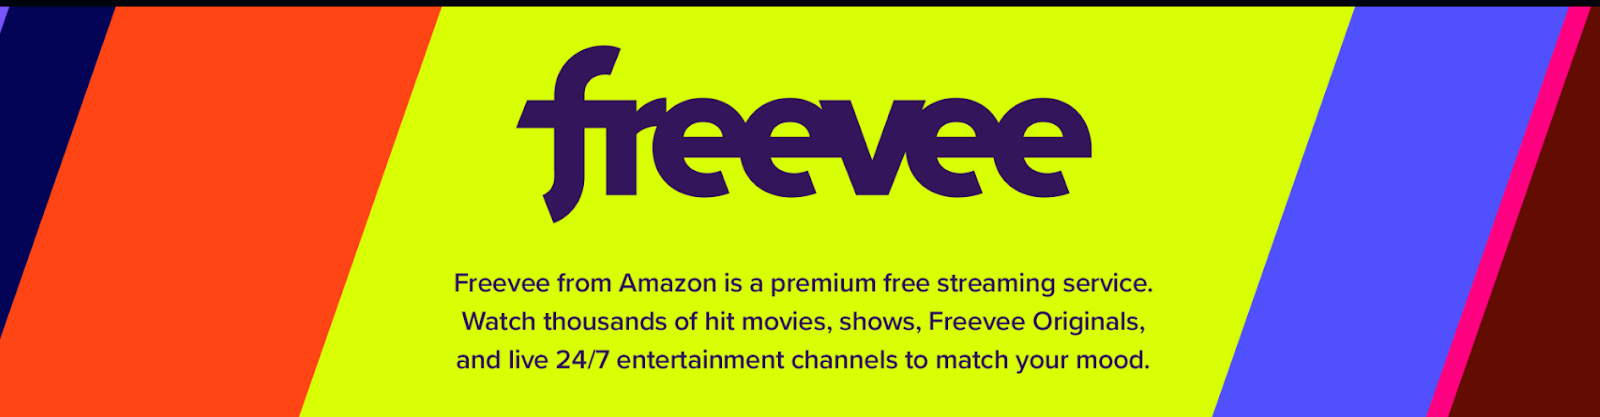 freevee has originals and licensed content